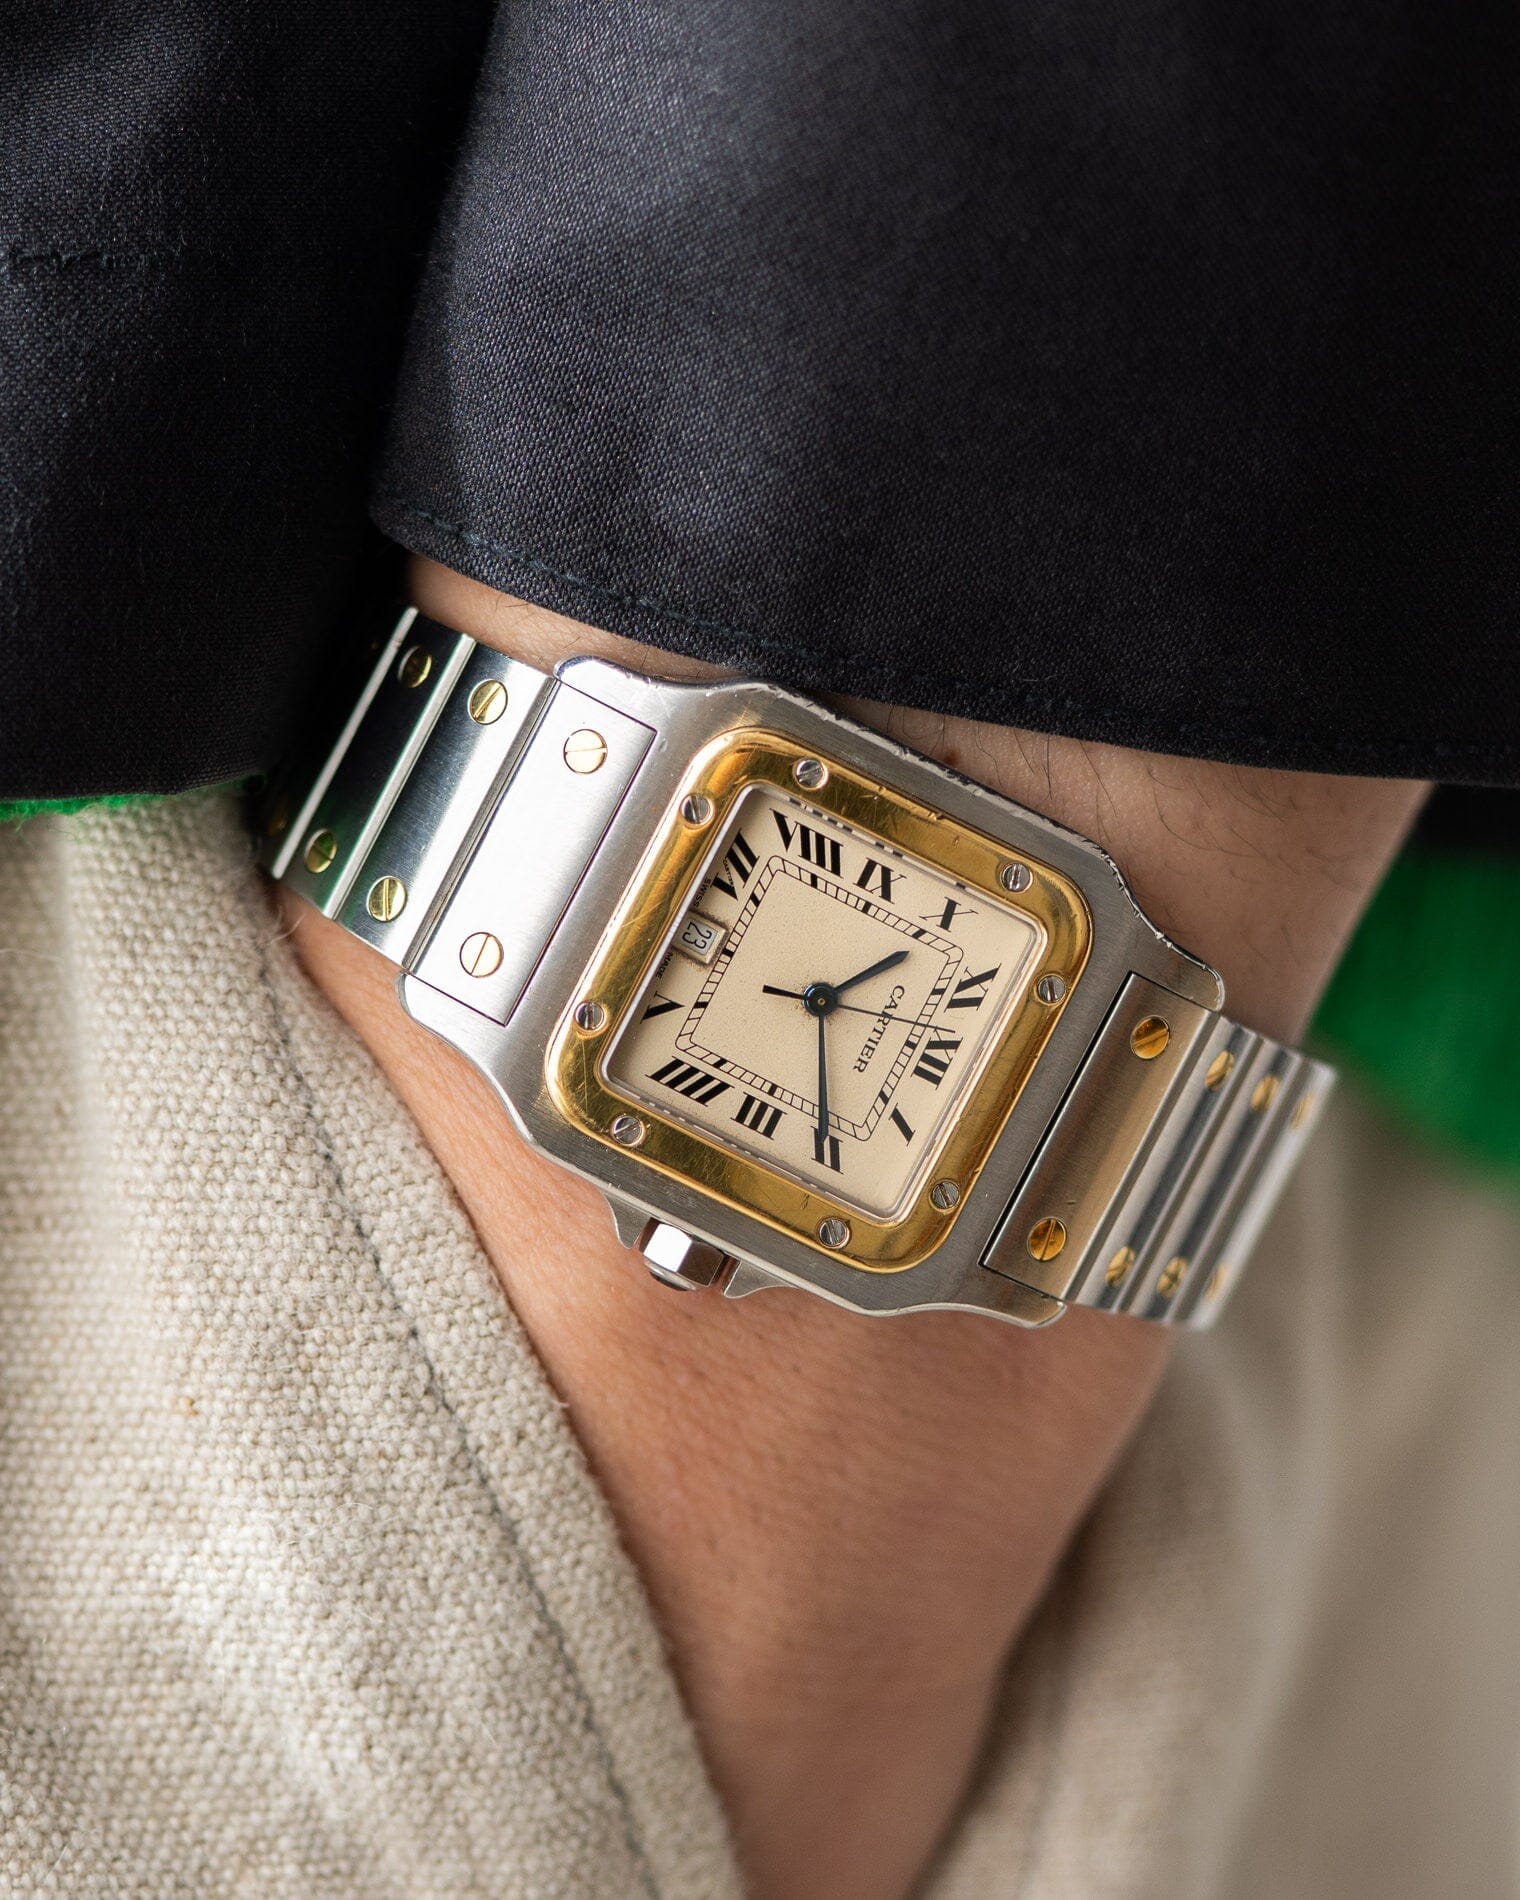 Cartier サントス ガルベ LM アイボリーローマン Watch CARTIER 